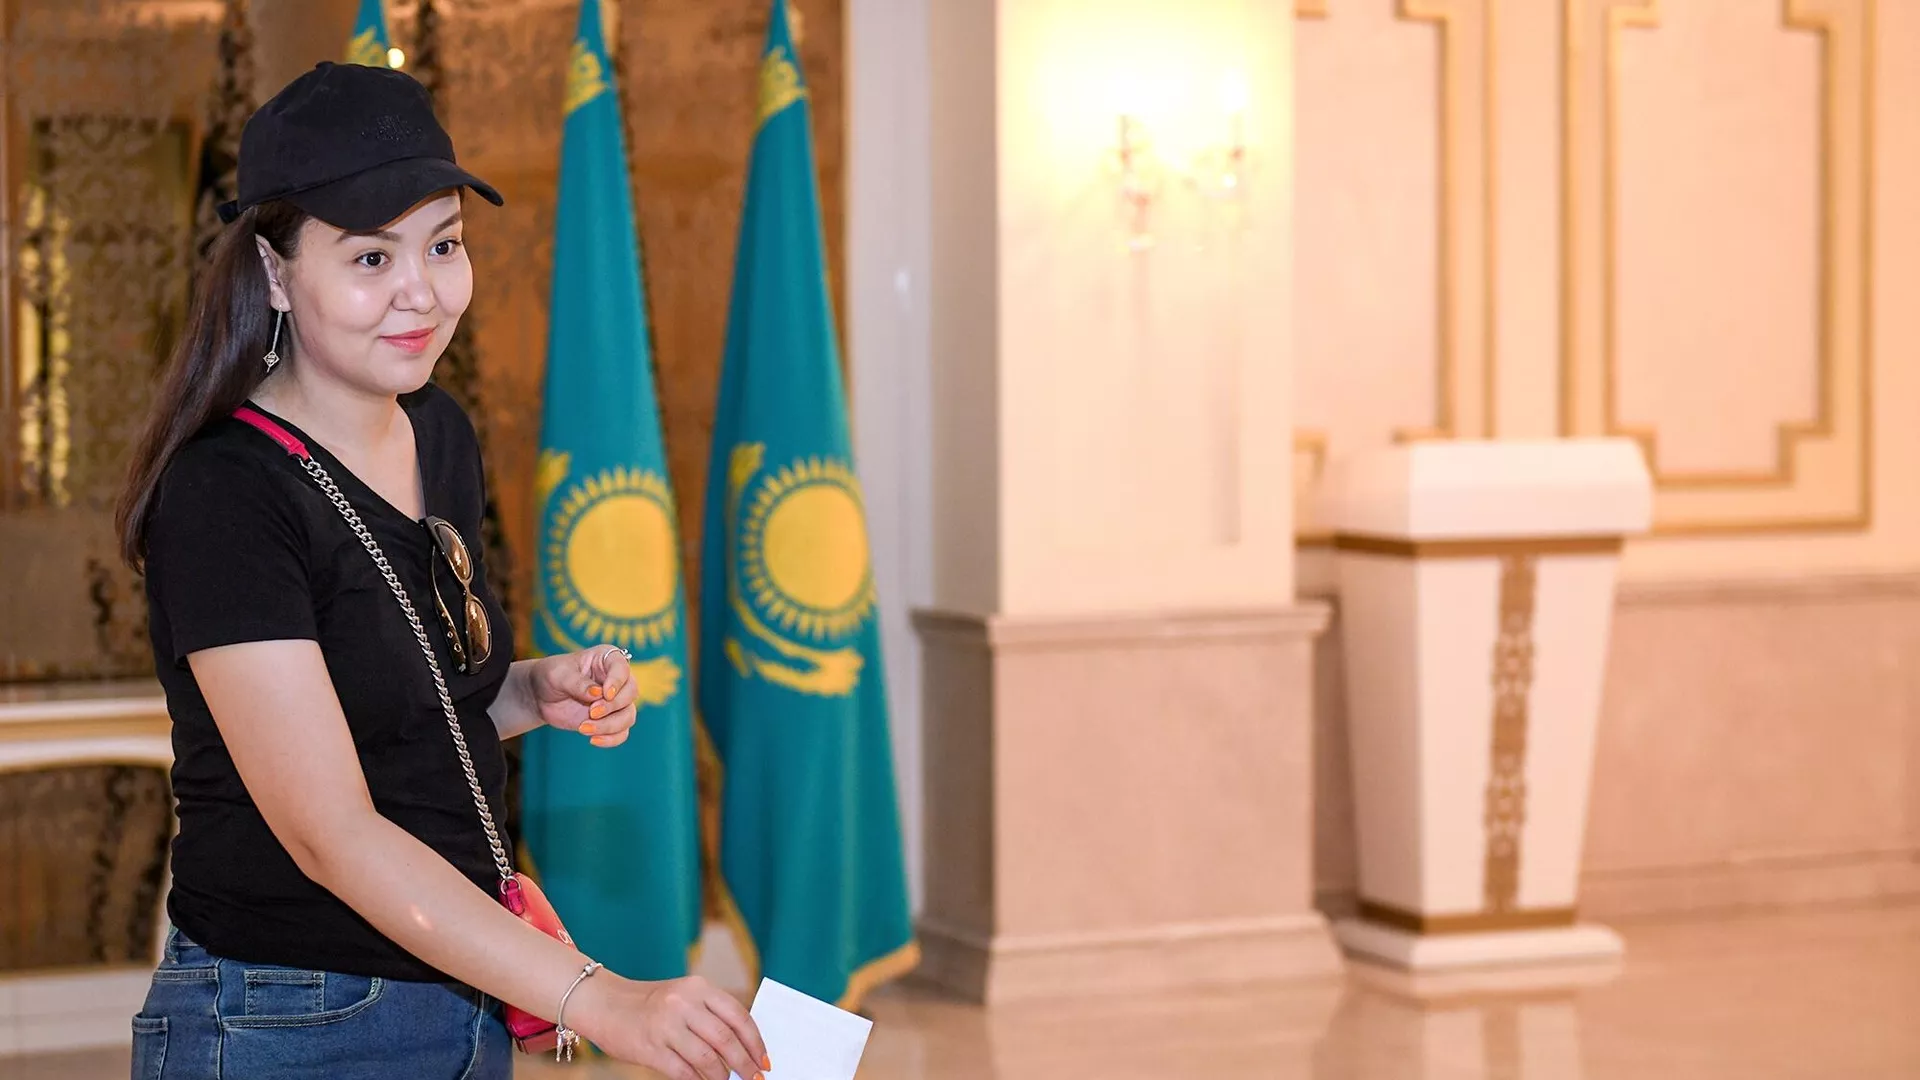 ՀՀ պատվիրակությունը կմեկնի Ղազախստան` դիտորդական առաքելություն իրականացնելու